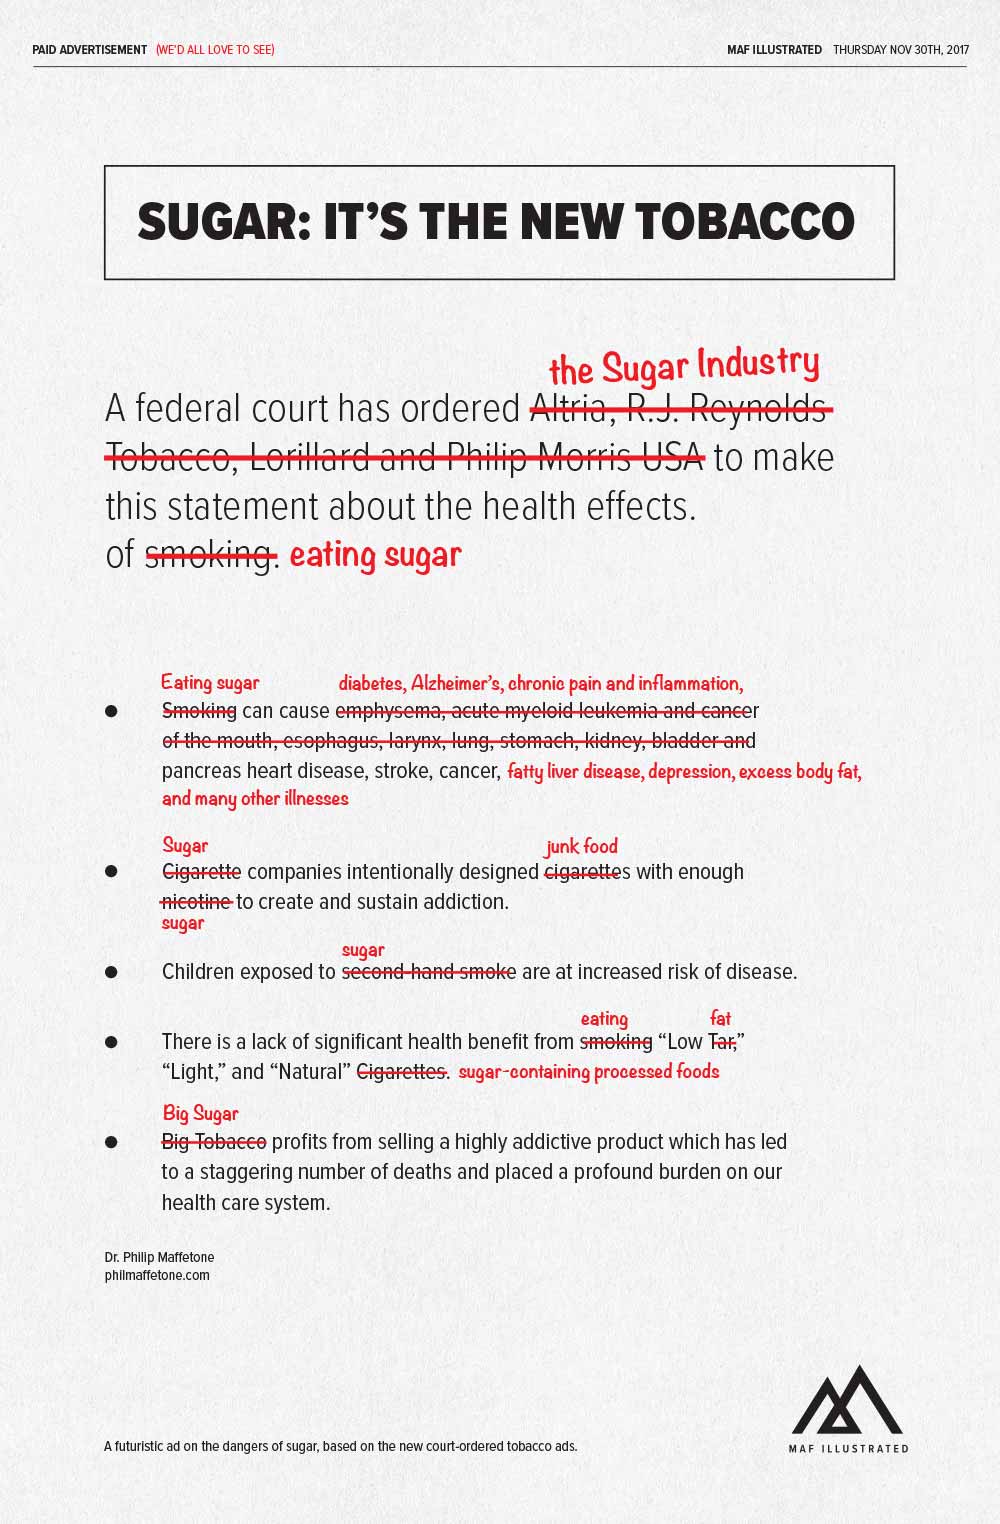 Big Sugar: Spoof Ad